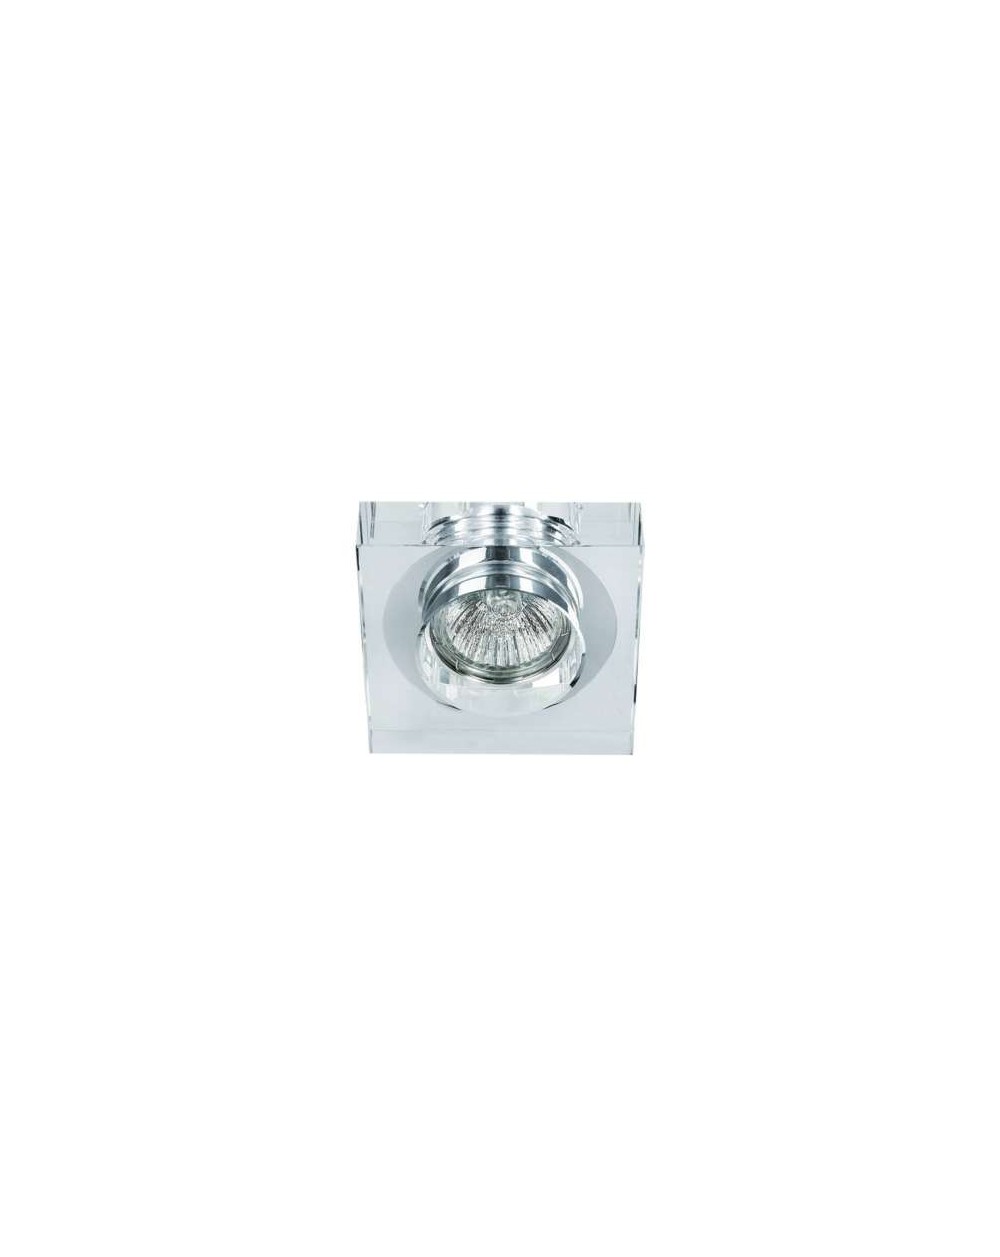 Wpuszczana / lampa sufitowa ASTRO Claro GU10 - Orlicki oprawa kwadratowa kryształ chrom